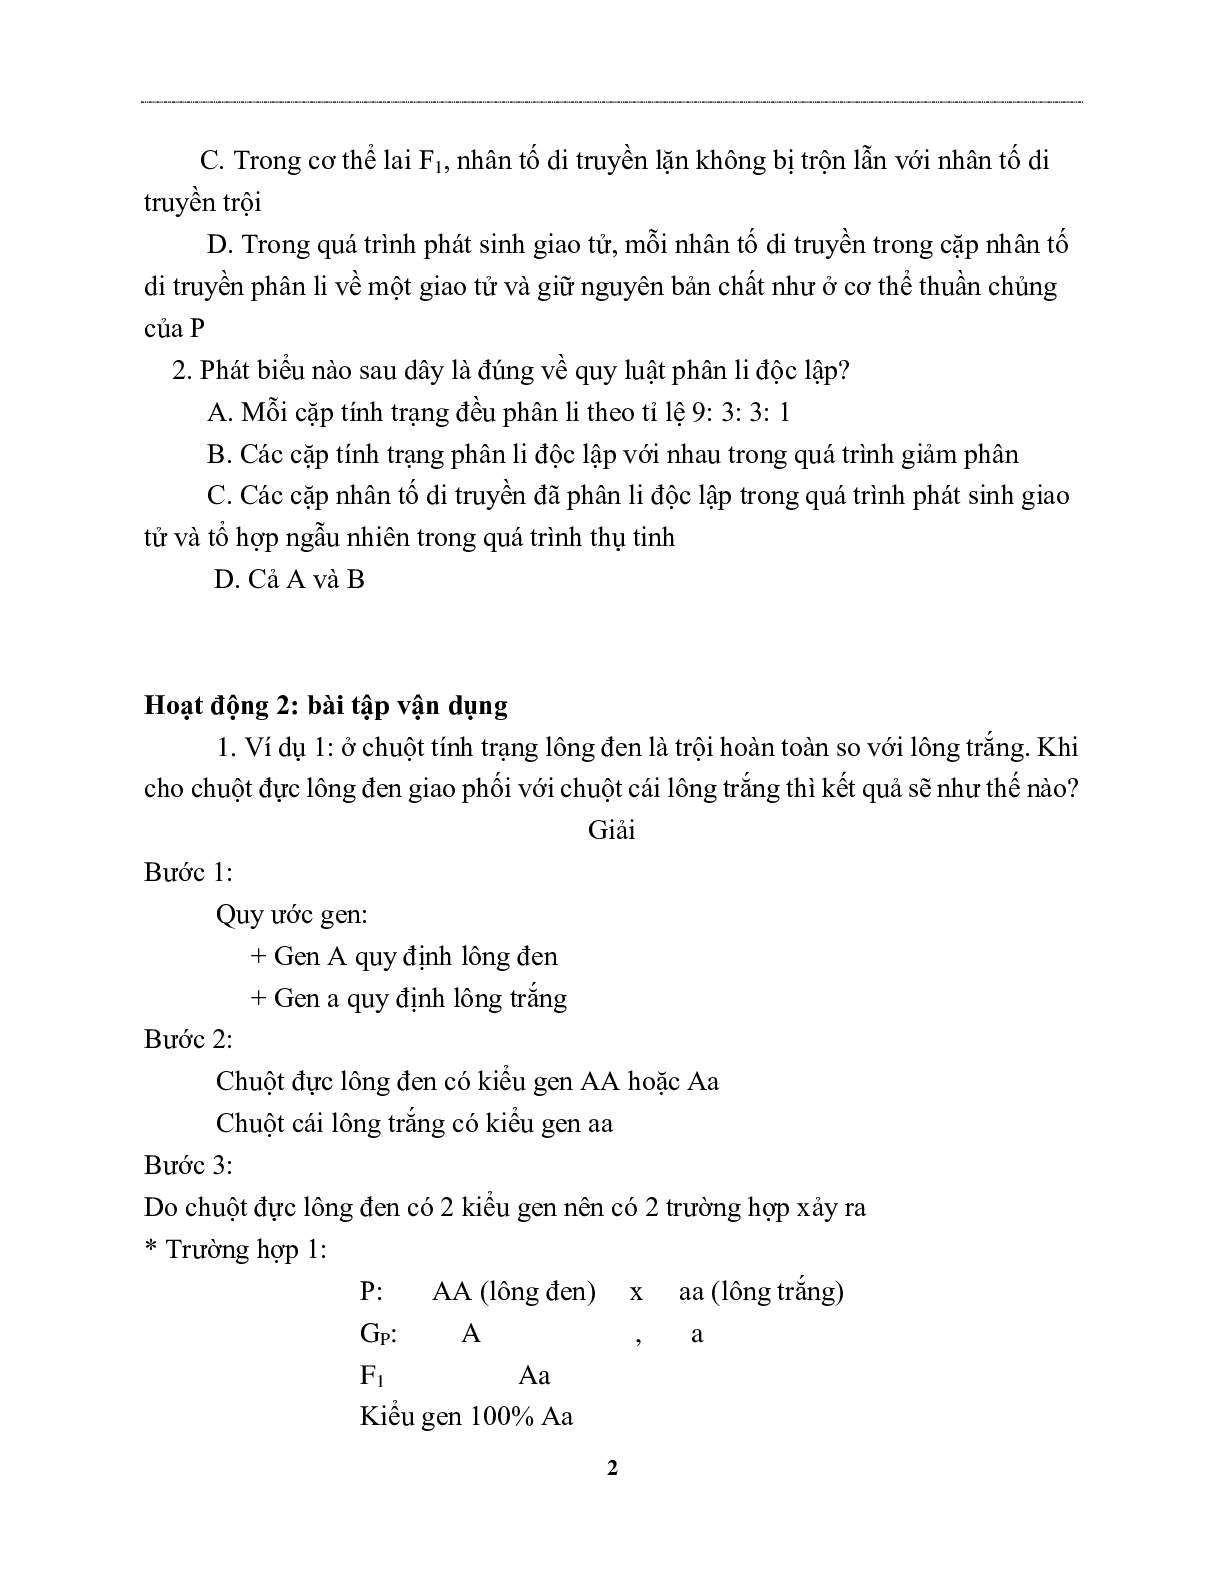 Giáp án Sinh Hoc 9 Bài tập Lai một cặp tính trạng mới nhất - CV5555 (trang 2)